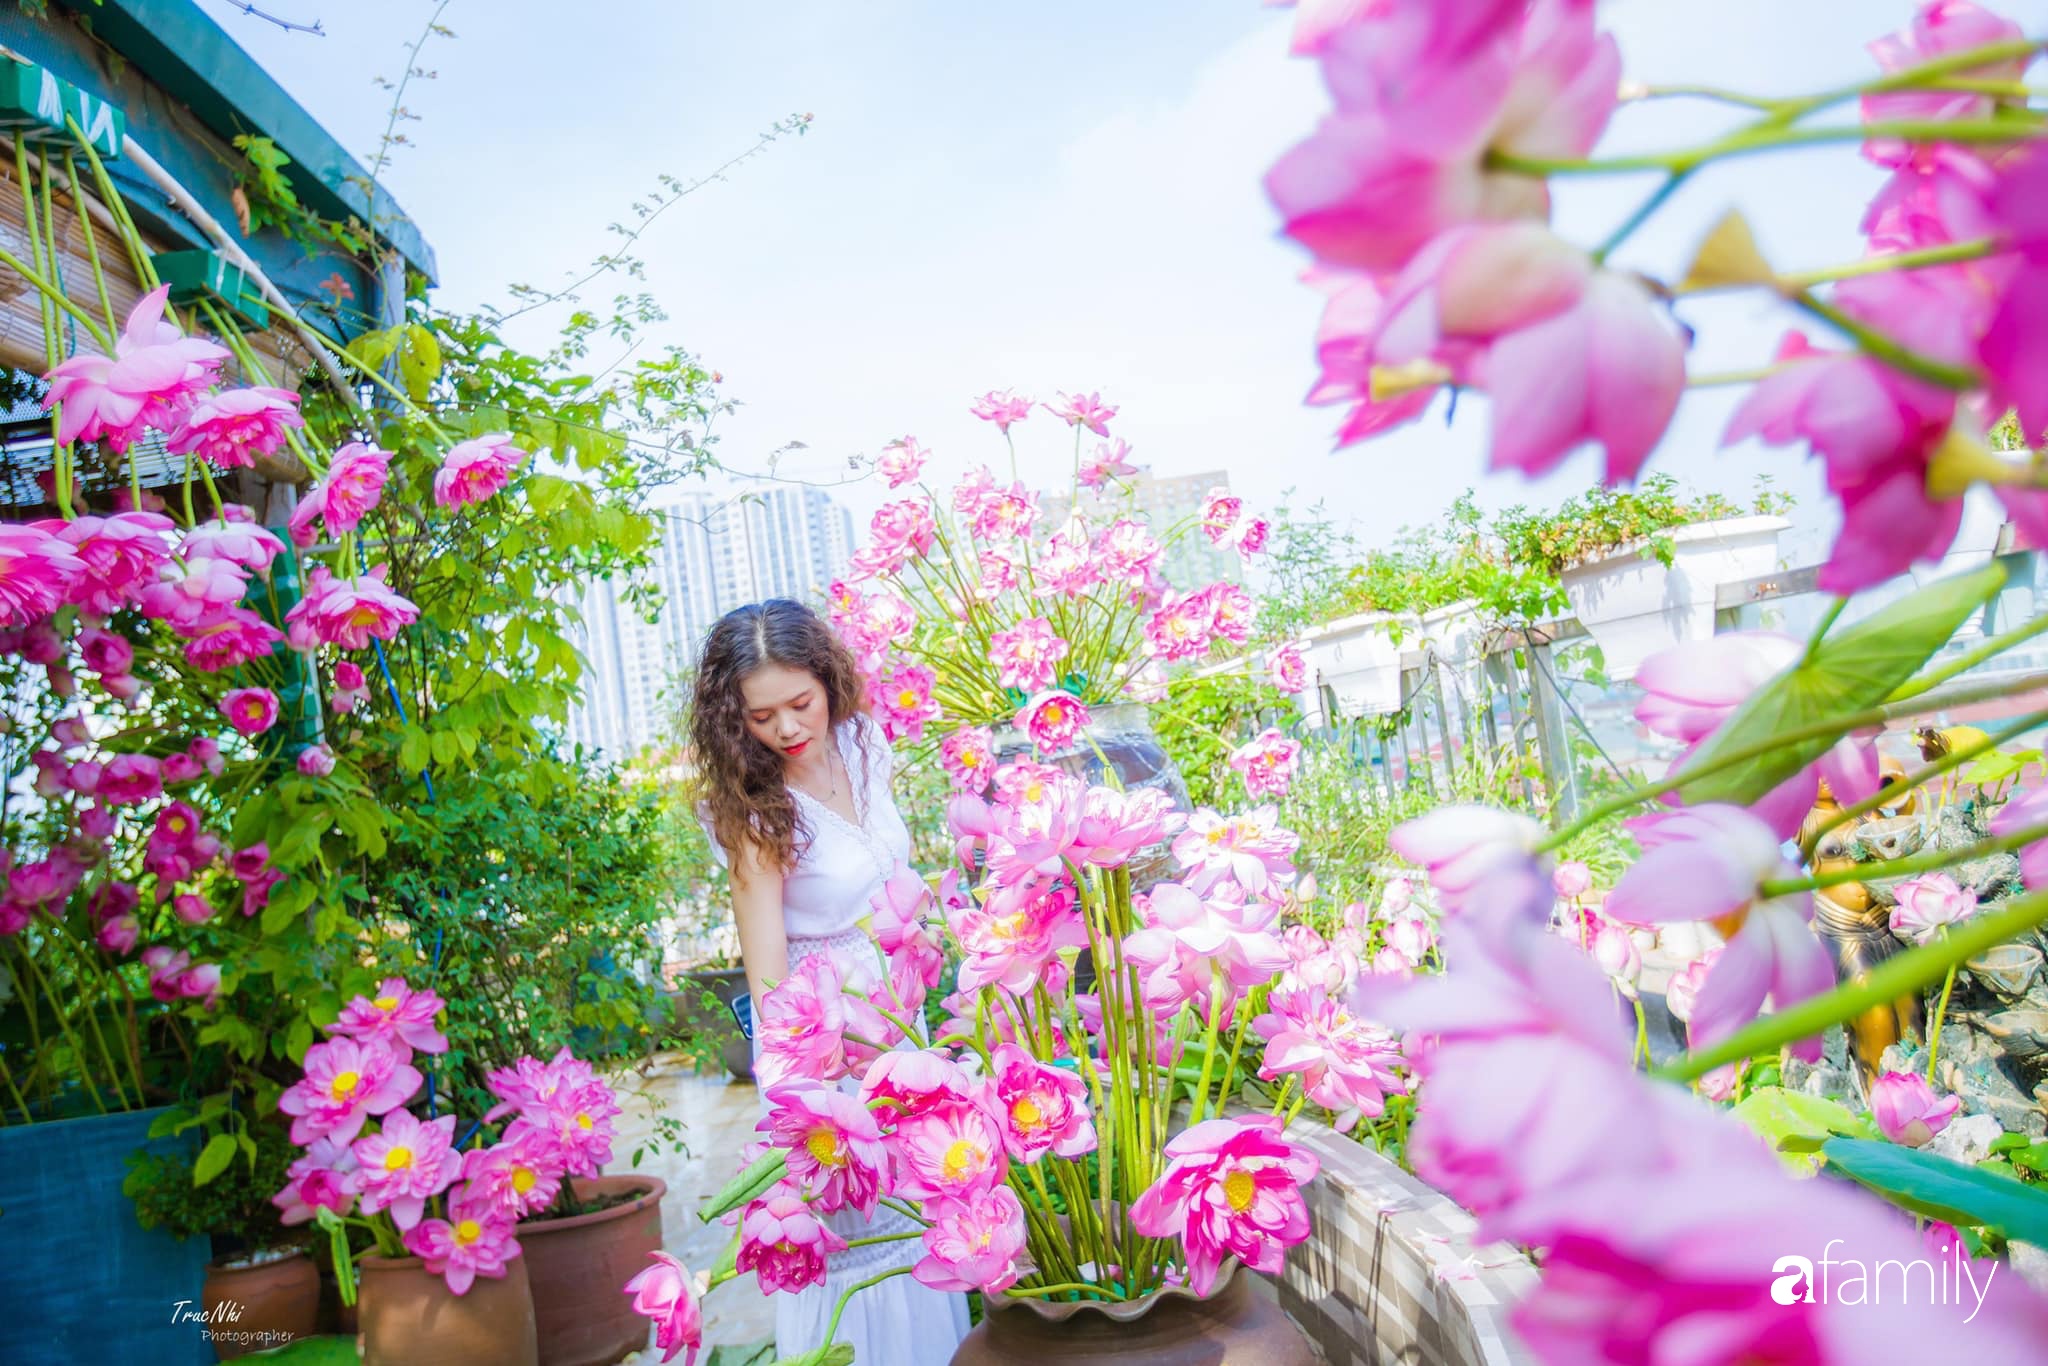 Bà mẹ Hà Nội tỉ mẩn dành 4 tiếng để tự cắm 1000 bông sen mang sắc màu mùa hạ lên sân thượng 200m² - Ảnh 2.